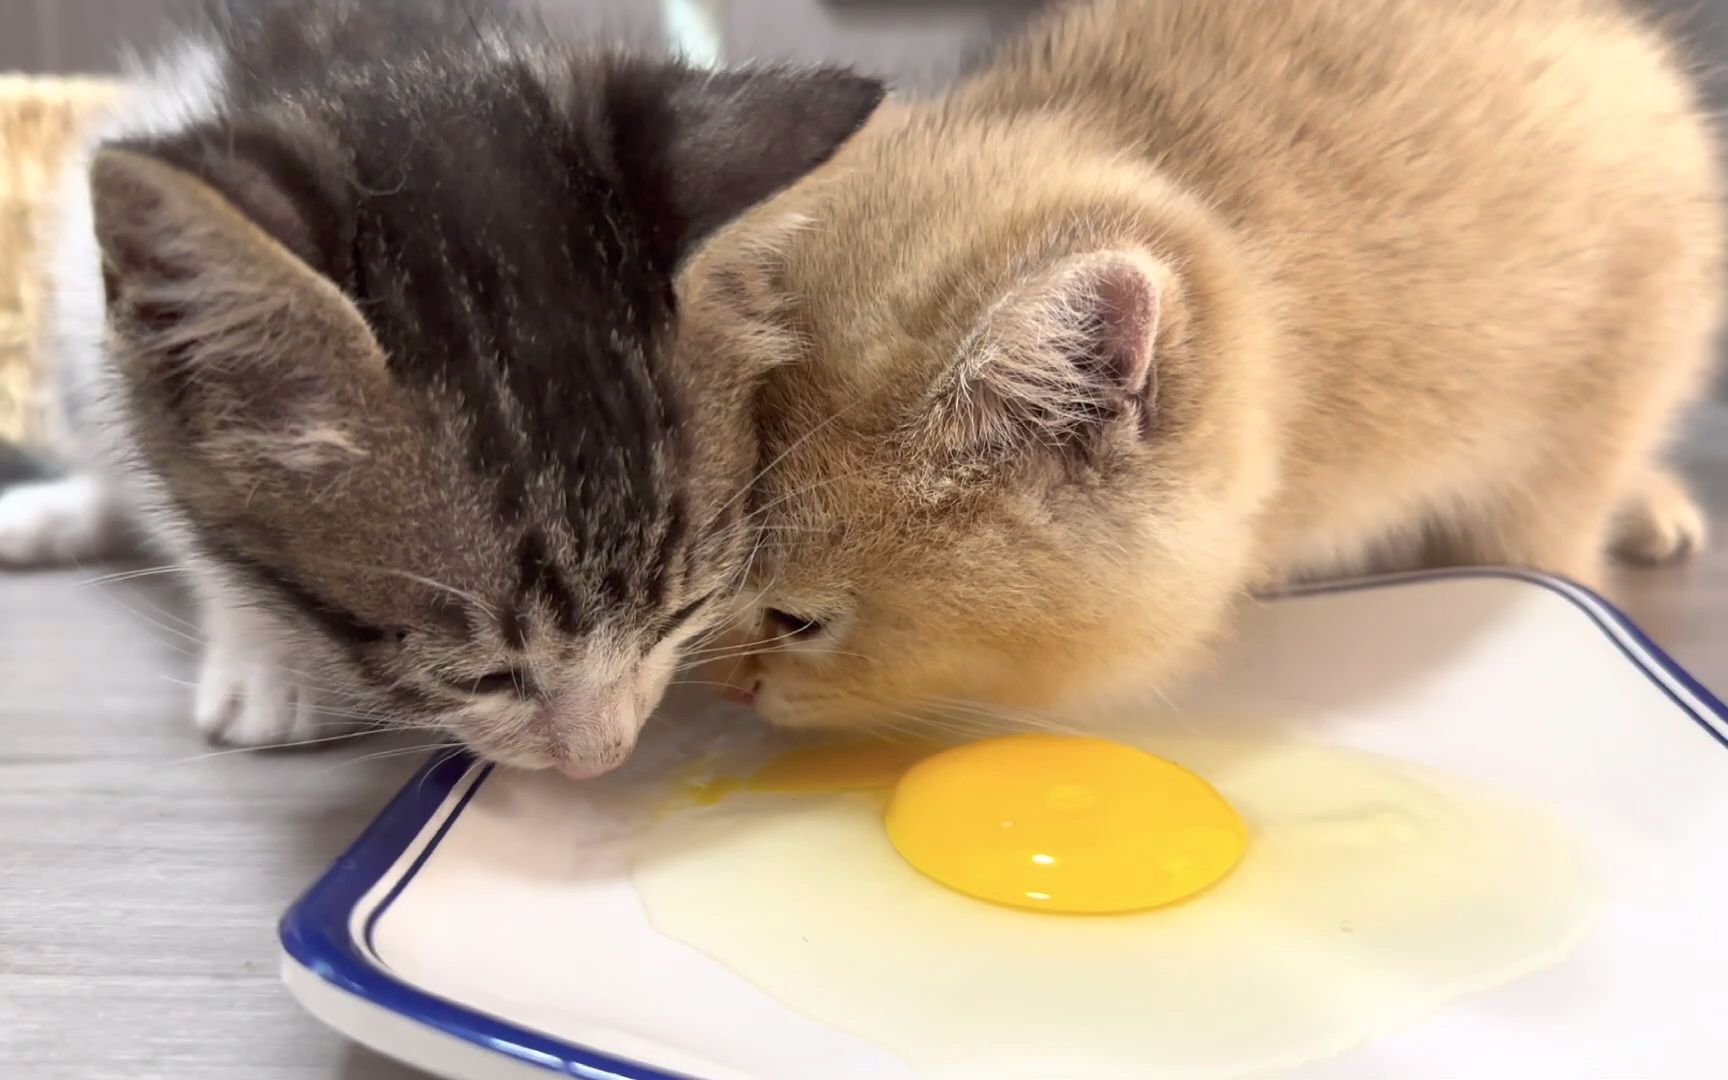 【与猫住】可爱的小猫第一次吃鸡蛋